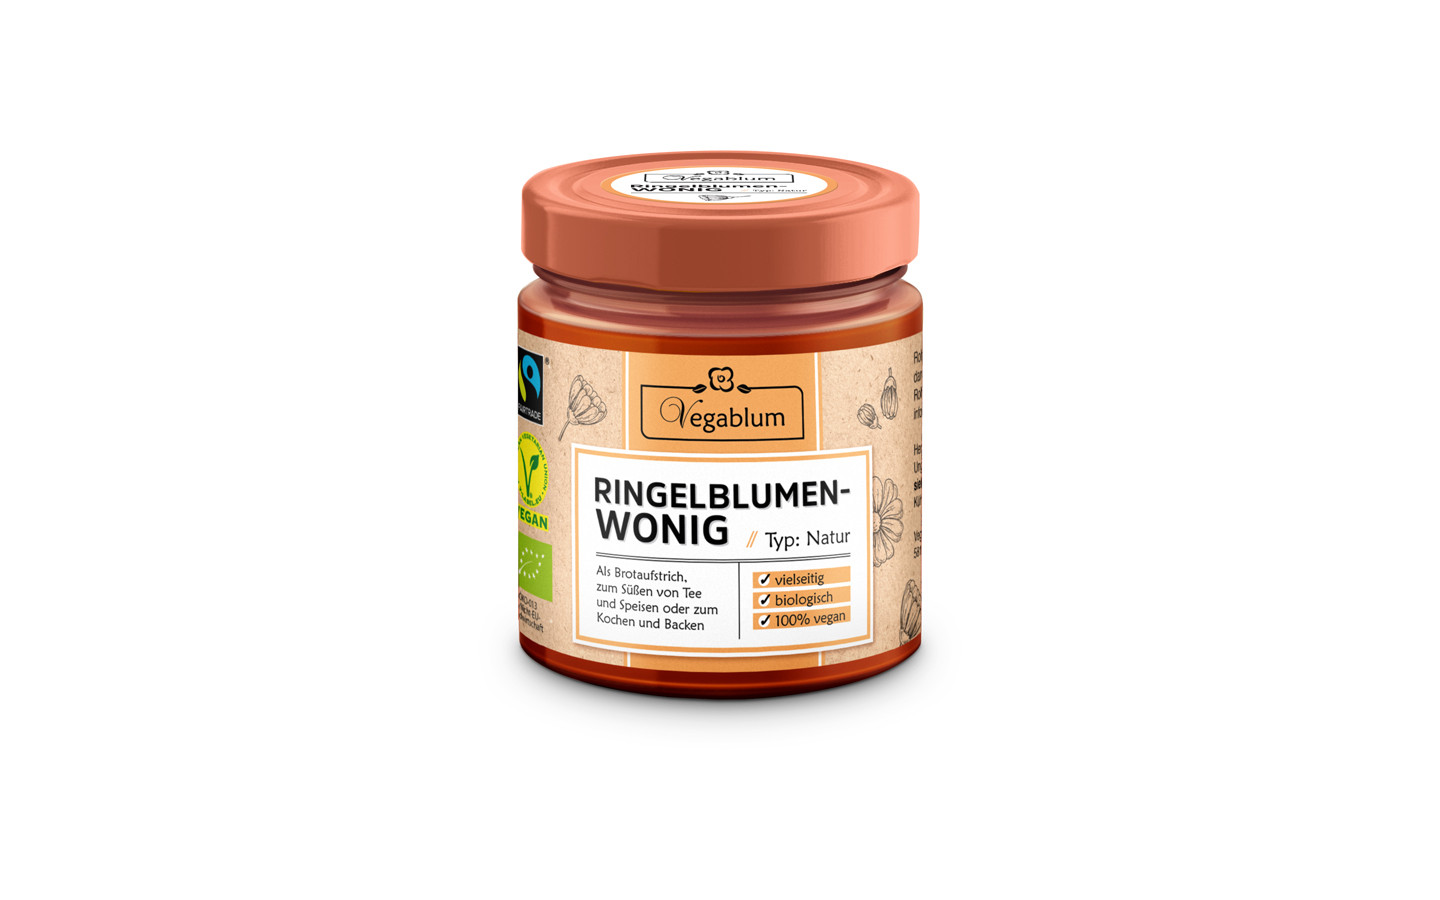 Wonig - The vegan Honey-Alternative